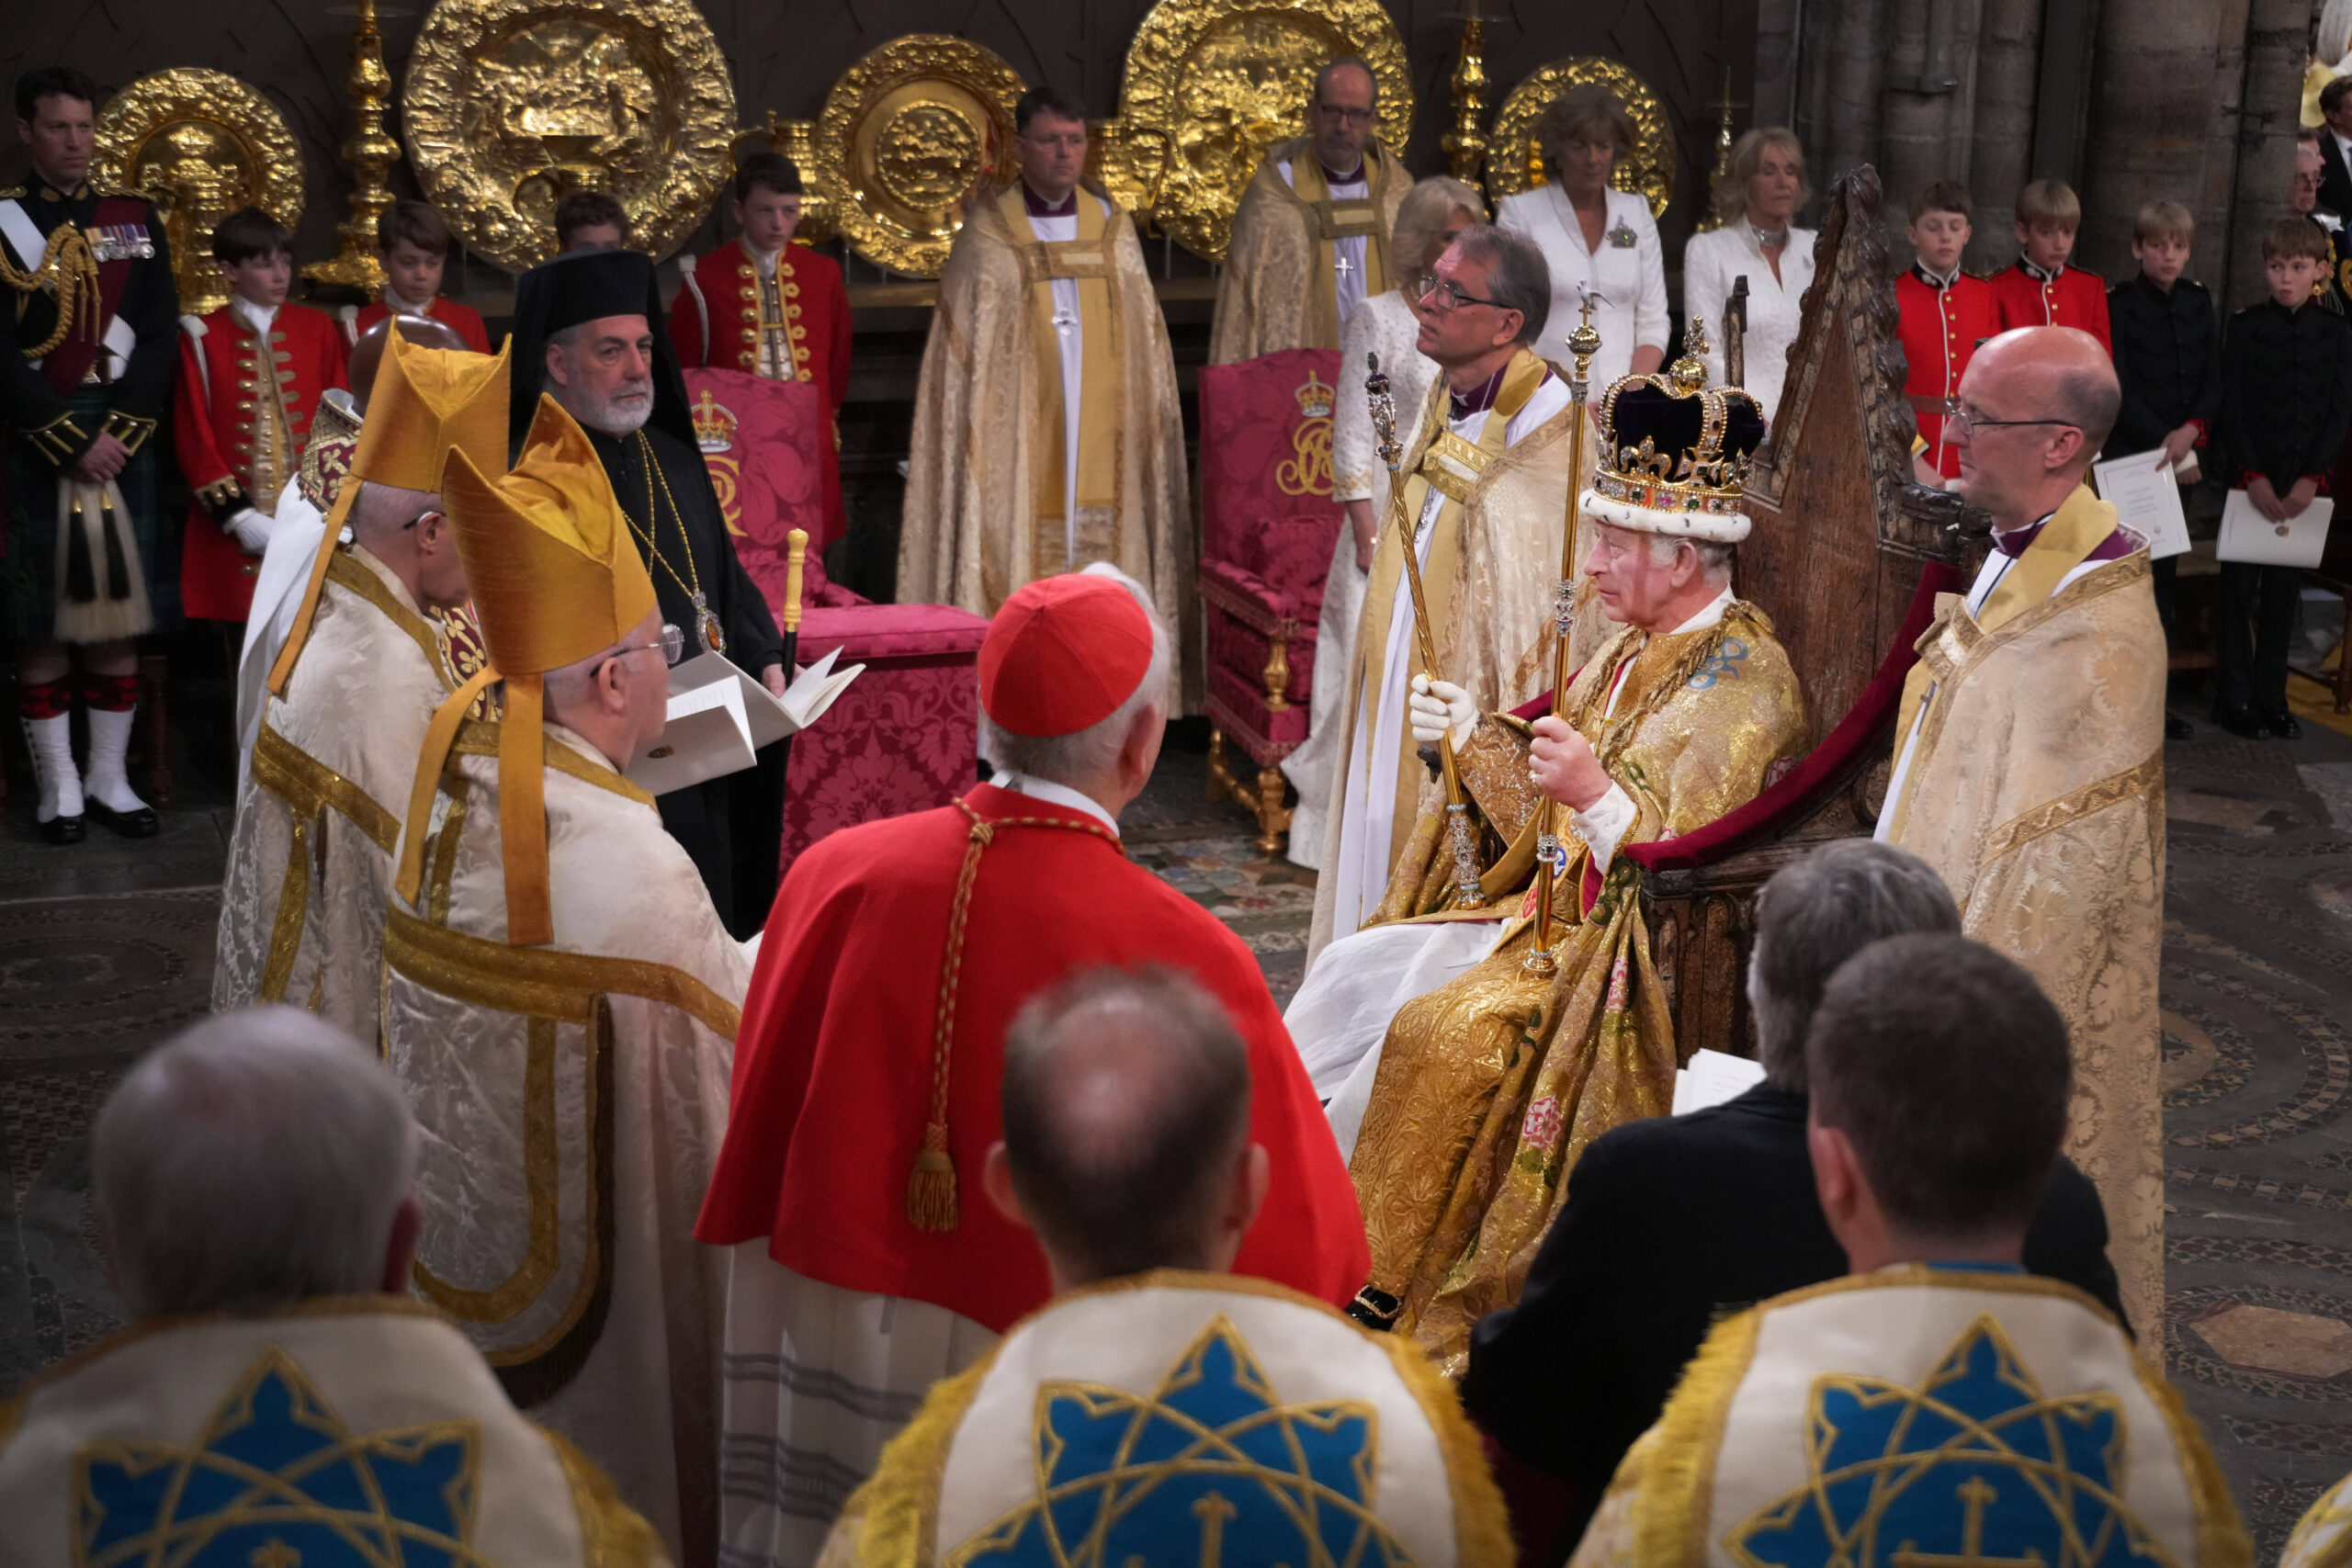 El Rey Carlos III, con la corona de San Eduardo, rodeado de jefes religiosos en su ceremonia de coronación en la Abadía de Westminster, Londres. © Victoria Jones/PA Wire/George Rogers/WPA-Pool/SIPA